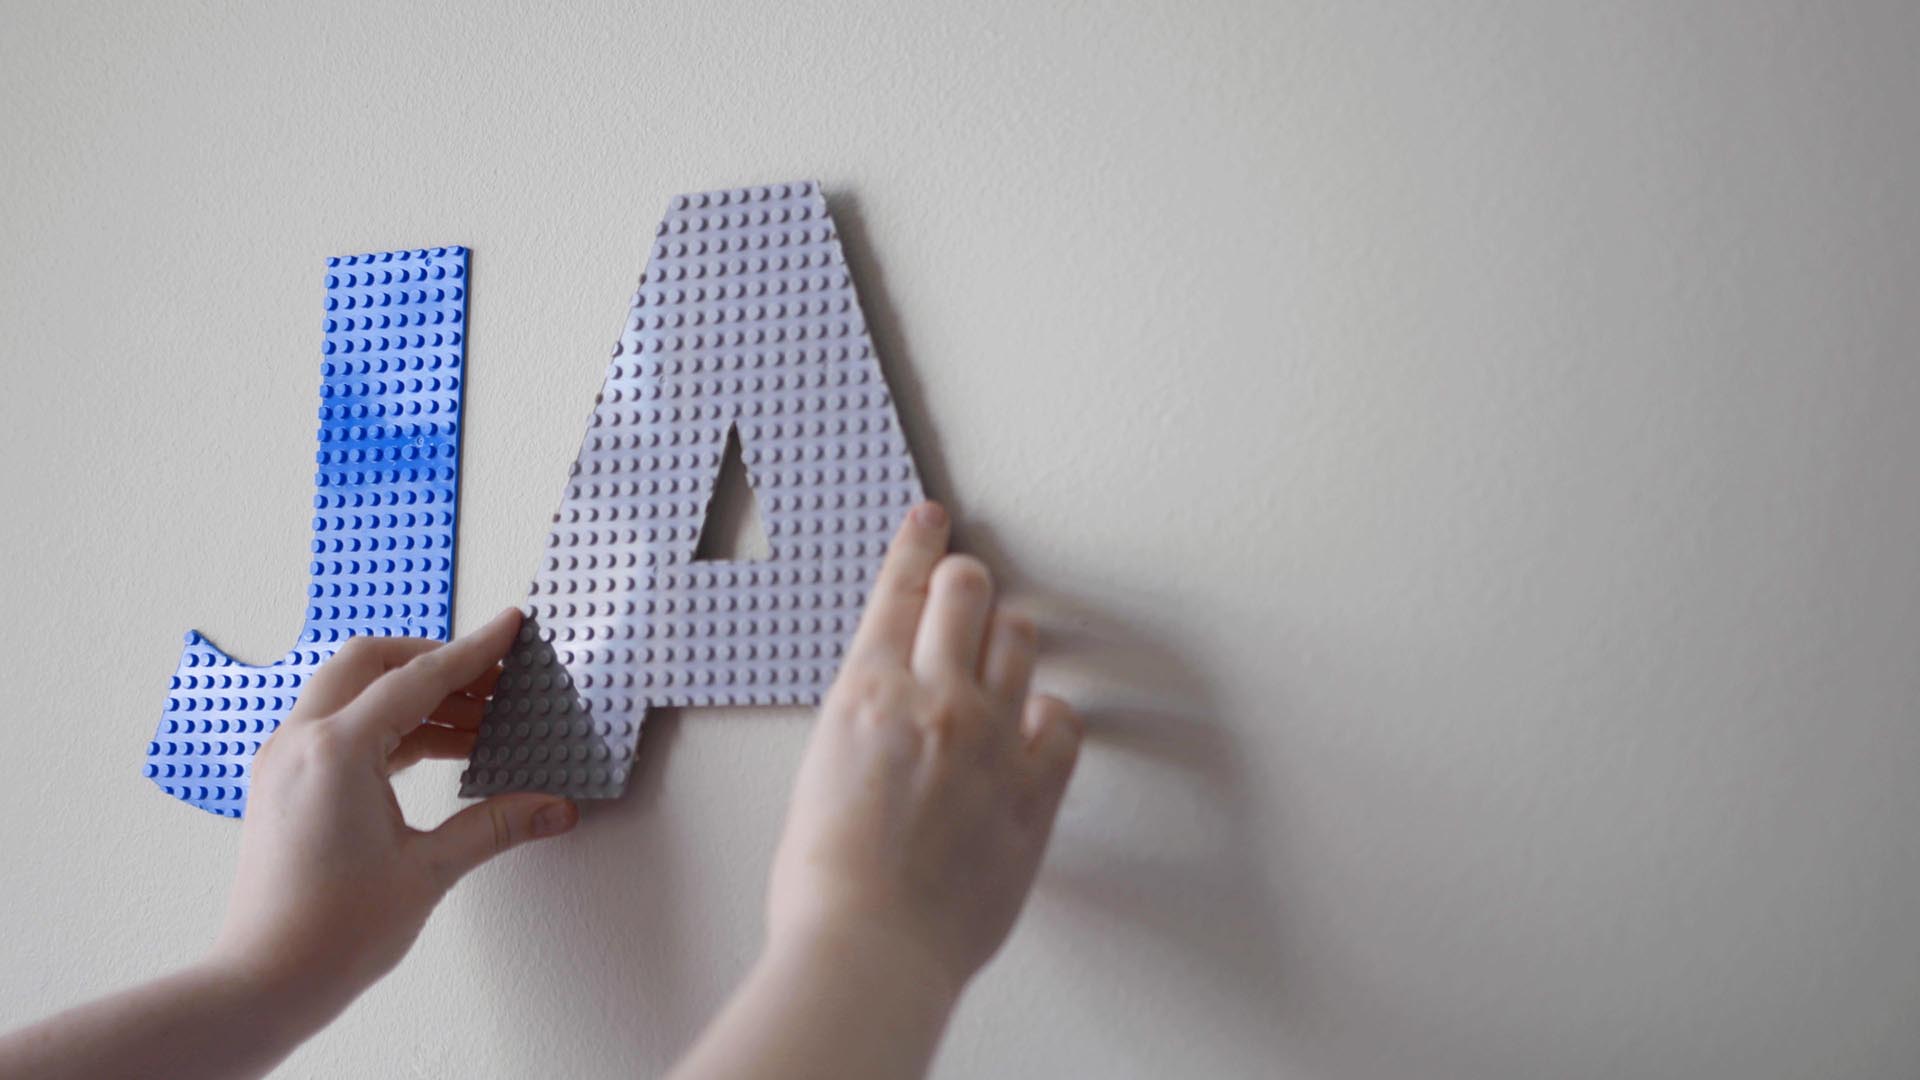 Monte los bloques de construcción LEGO®.